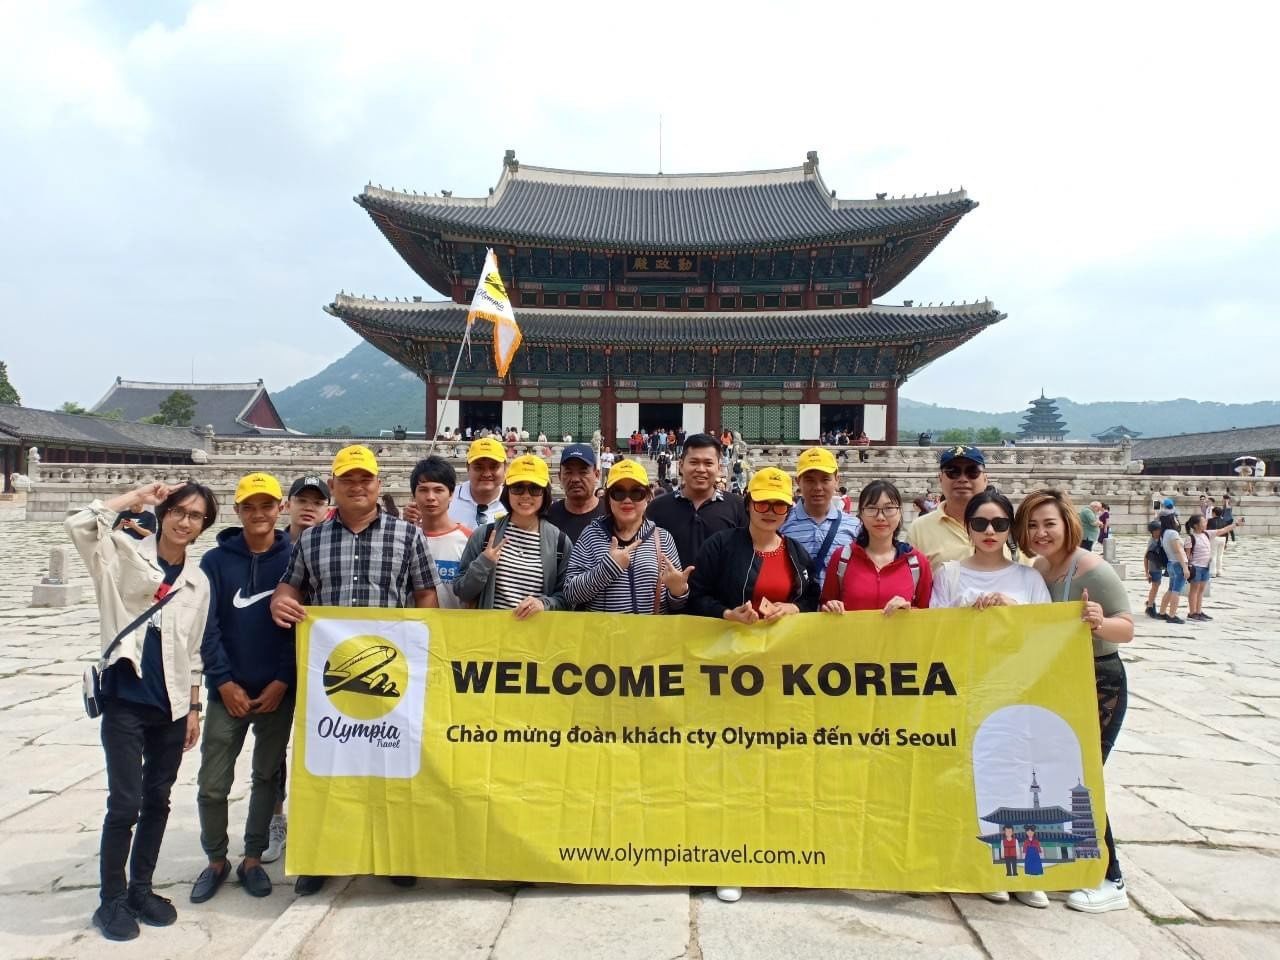 Doanh nhân trẻ CEO Olympia Travel Việt Nam khởi nghiệp bằng đam mê du lịch - 5